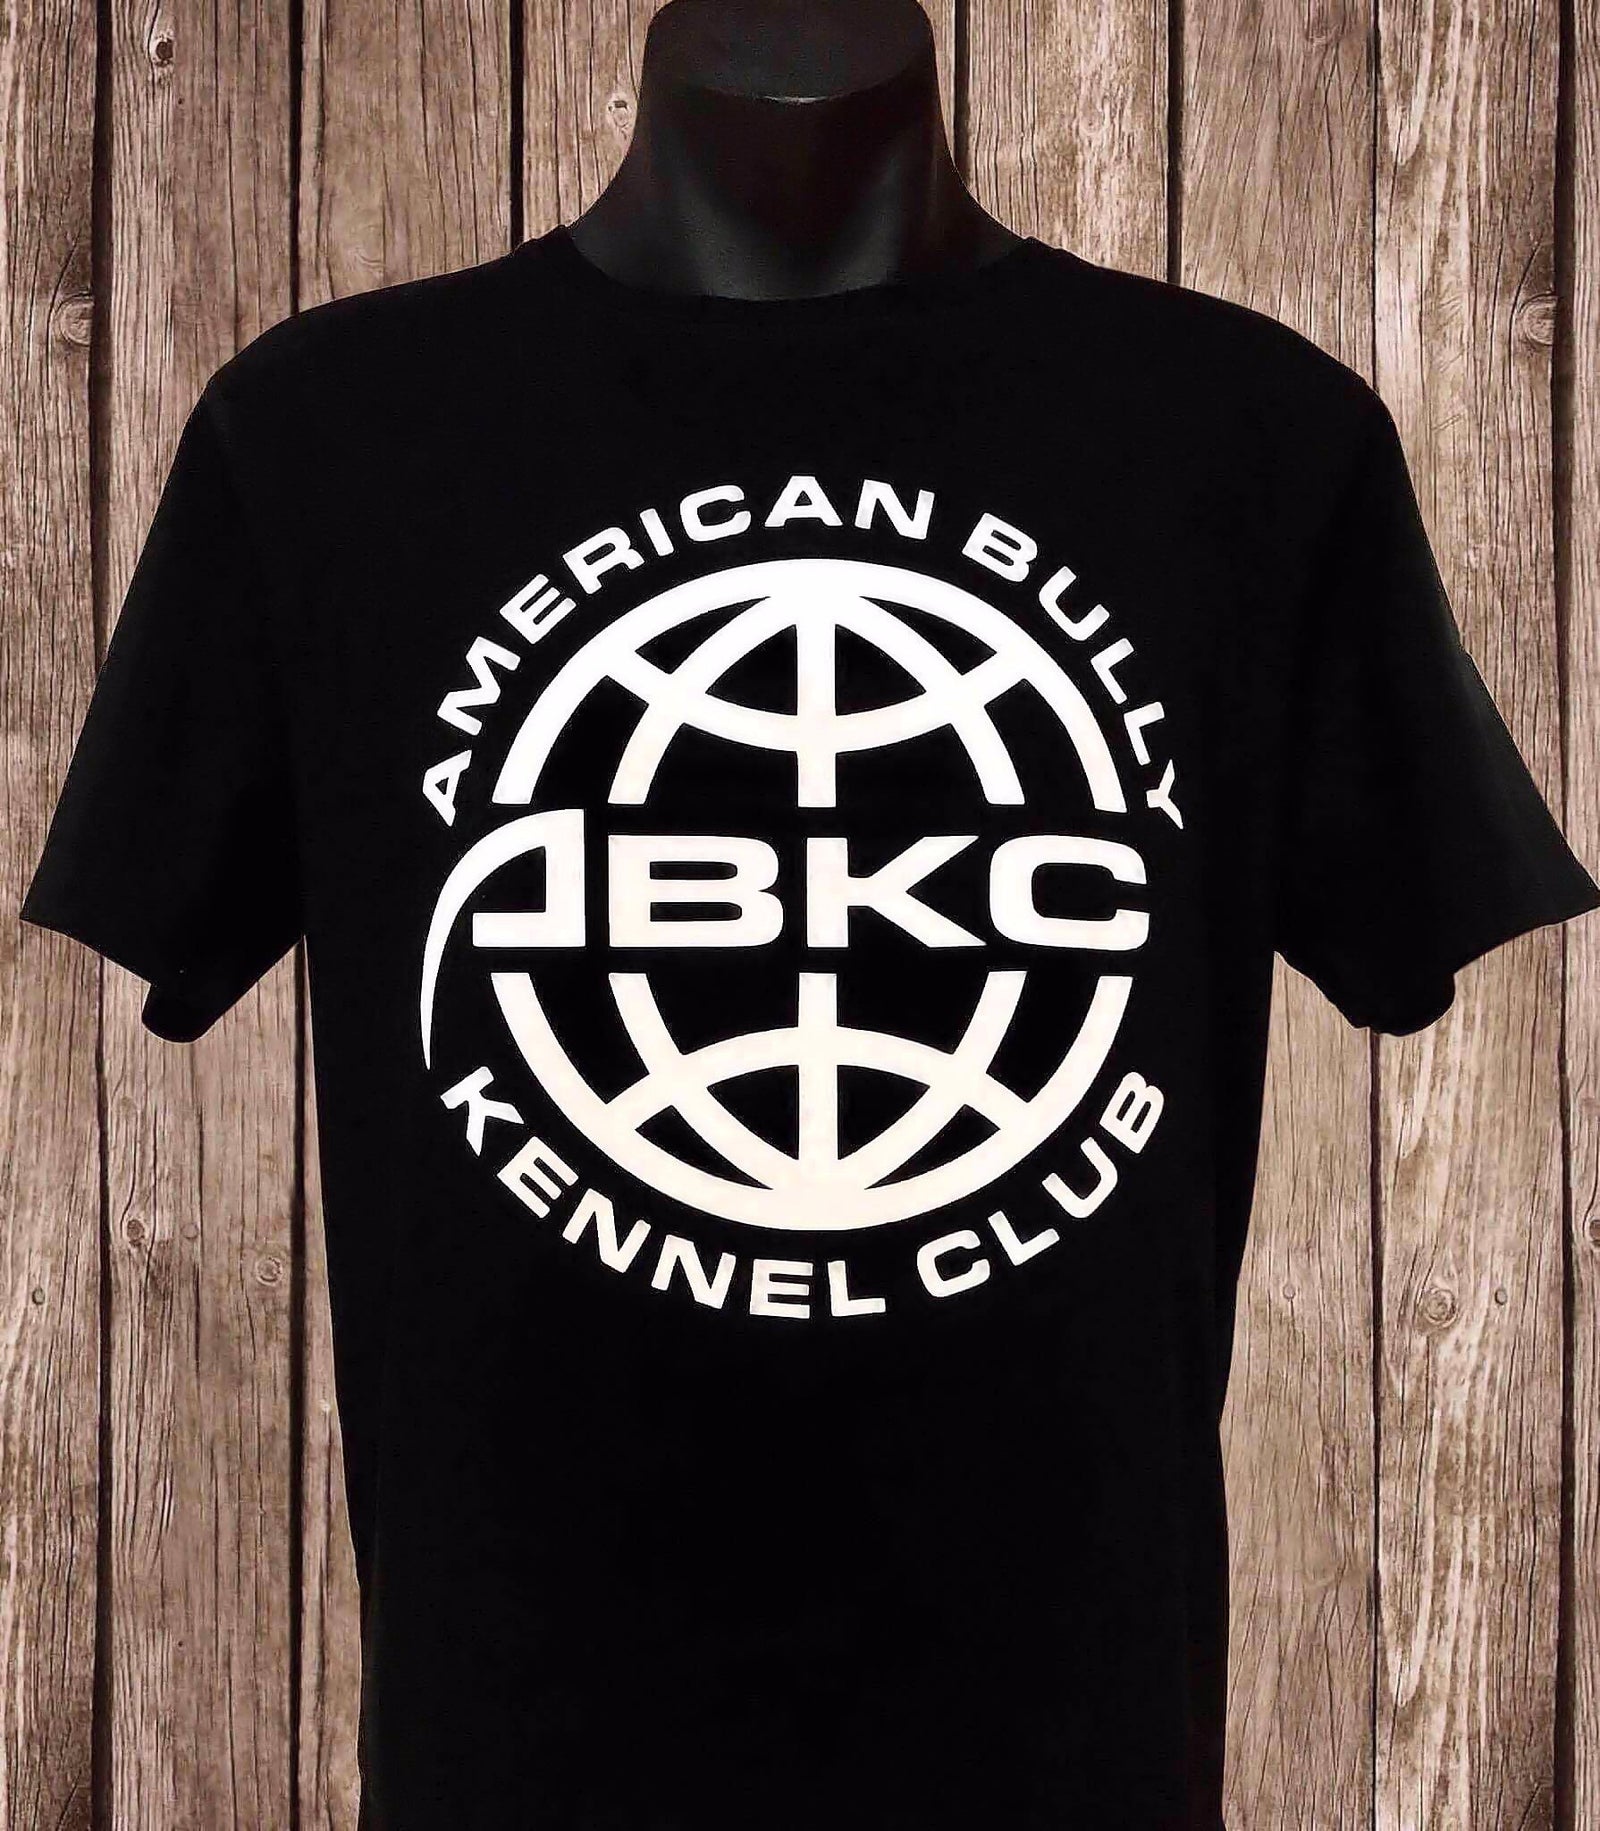 ABKC - American Bully Kennel Club - T-SHIRT -